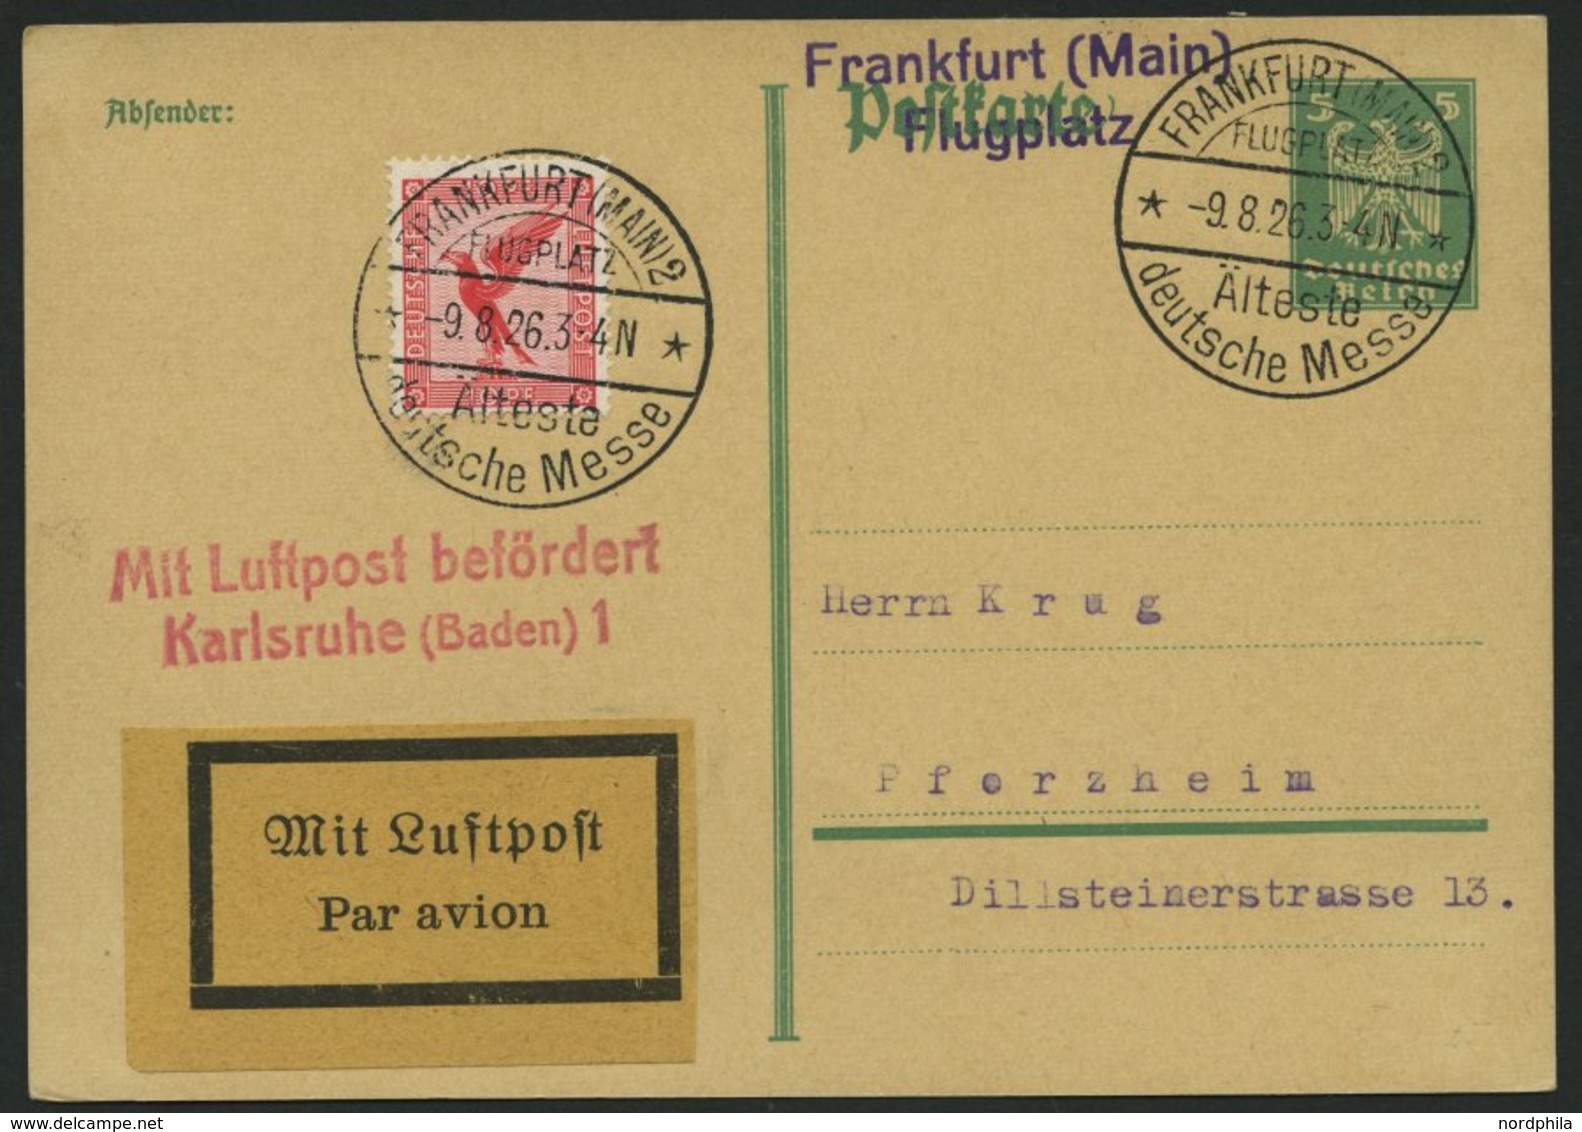 LUFTPOSTBESTÄTIGUNGSSTPL 59-02a BRIEF, KARLSRUHE 1, L2 In Rot, Postkarte Von FRANKFURT (MAIN) 2 Nach Pforzheim, Pracht - Airmail & Zeppelin